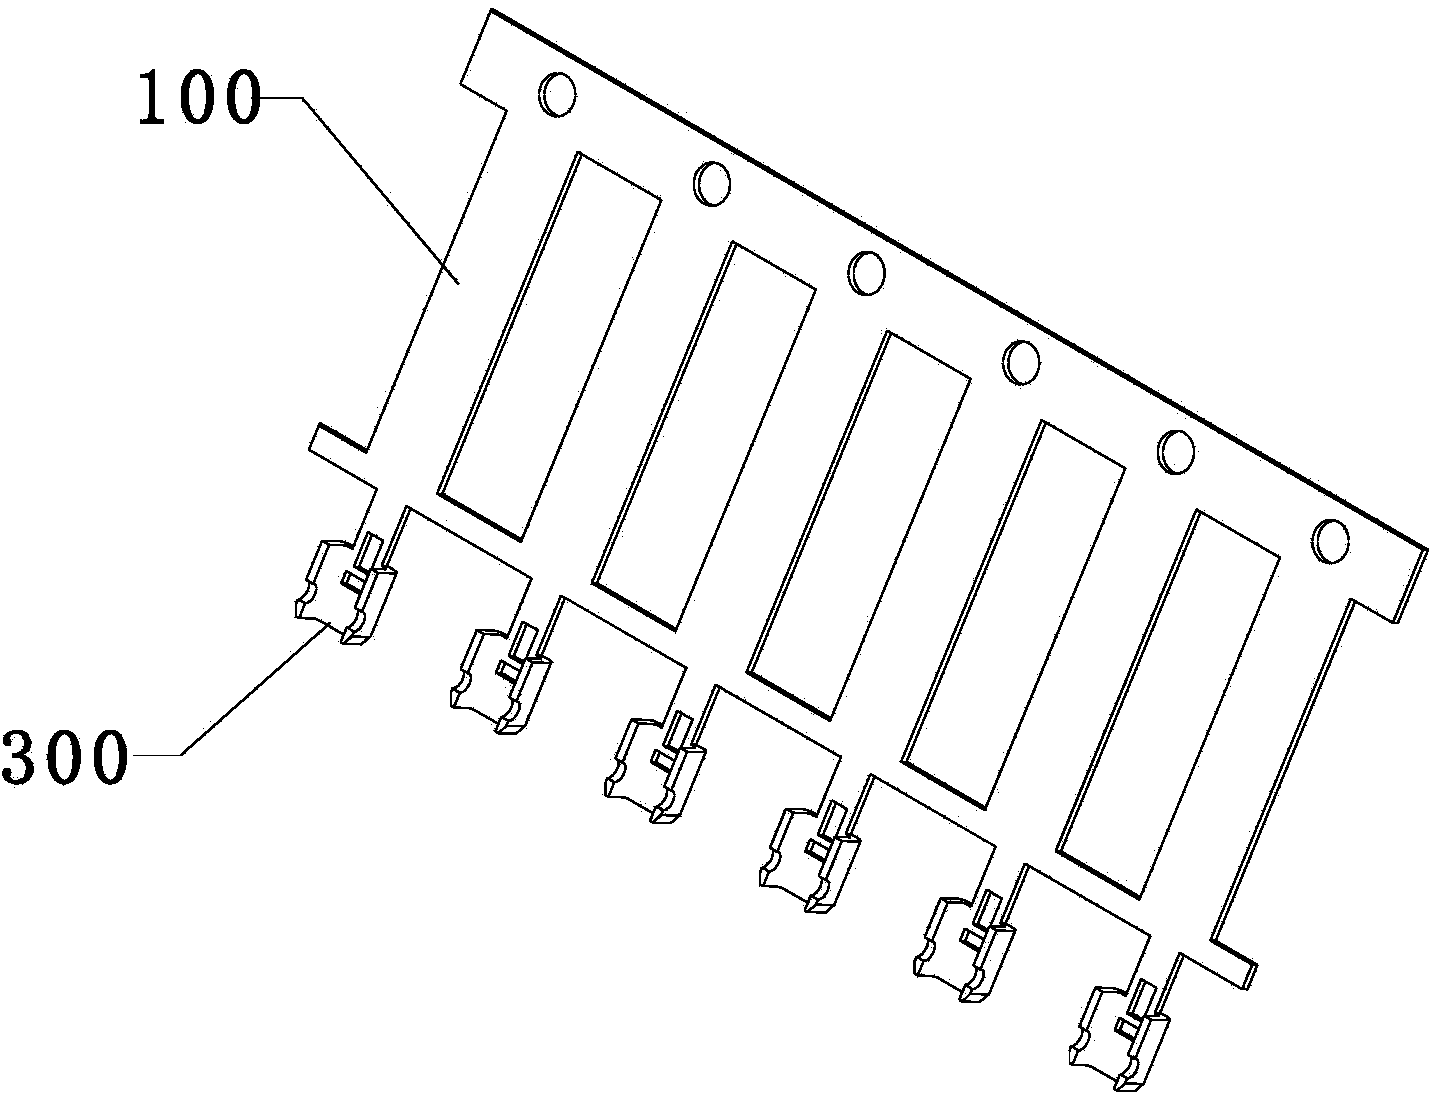 RJ45 connector light guiding column